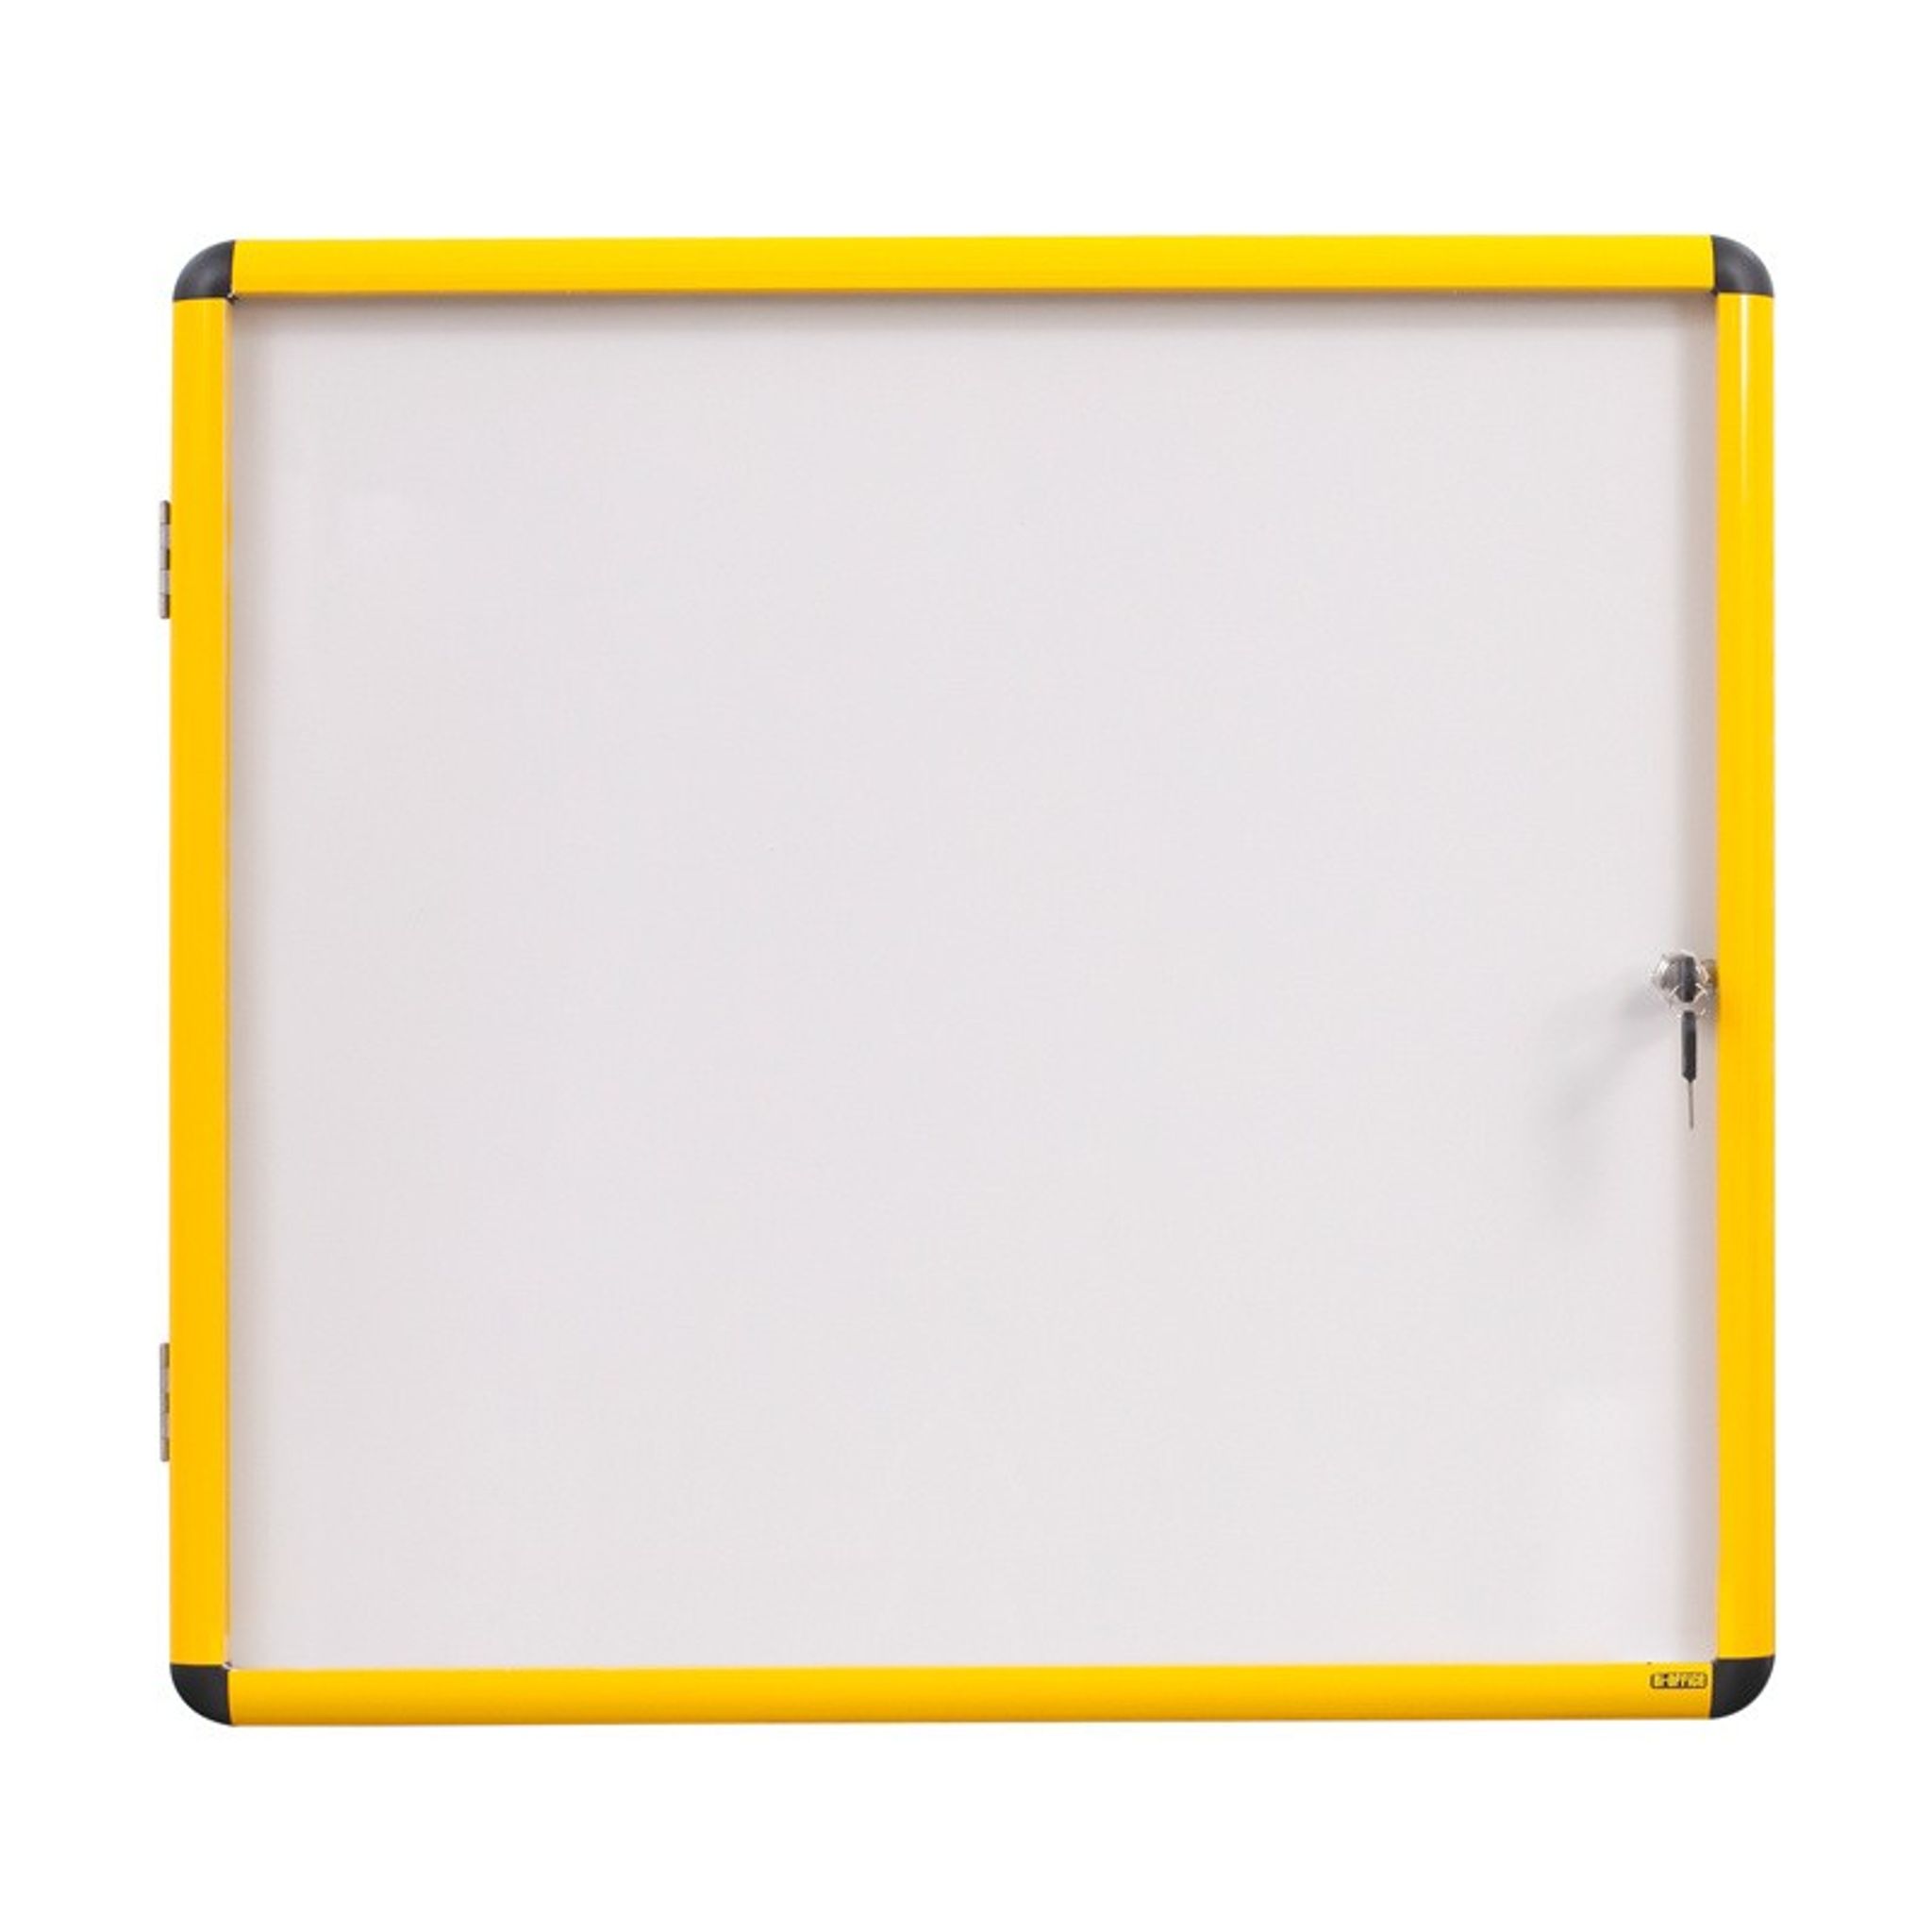 Gablota wewnętrzna z białą powierzchnią magnetyczną, żółta ramka, 720 x 981 mm (9xA4)